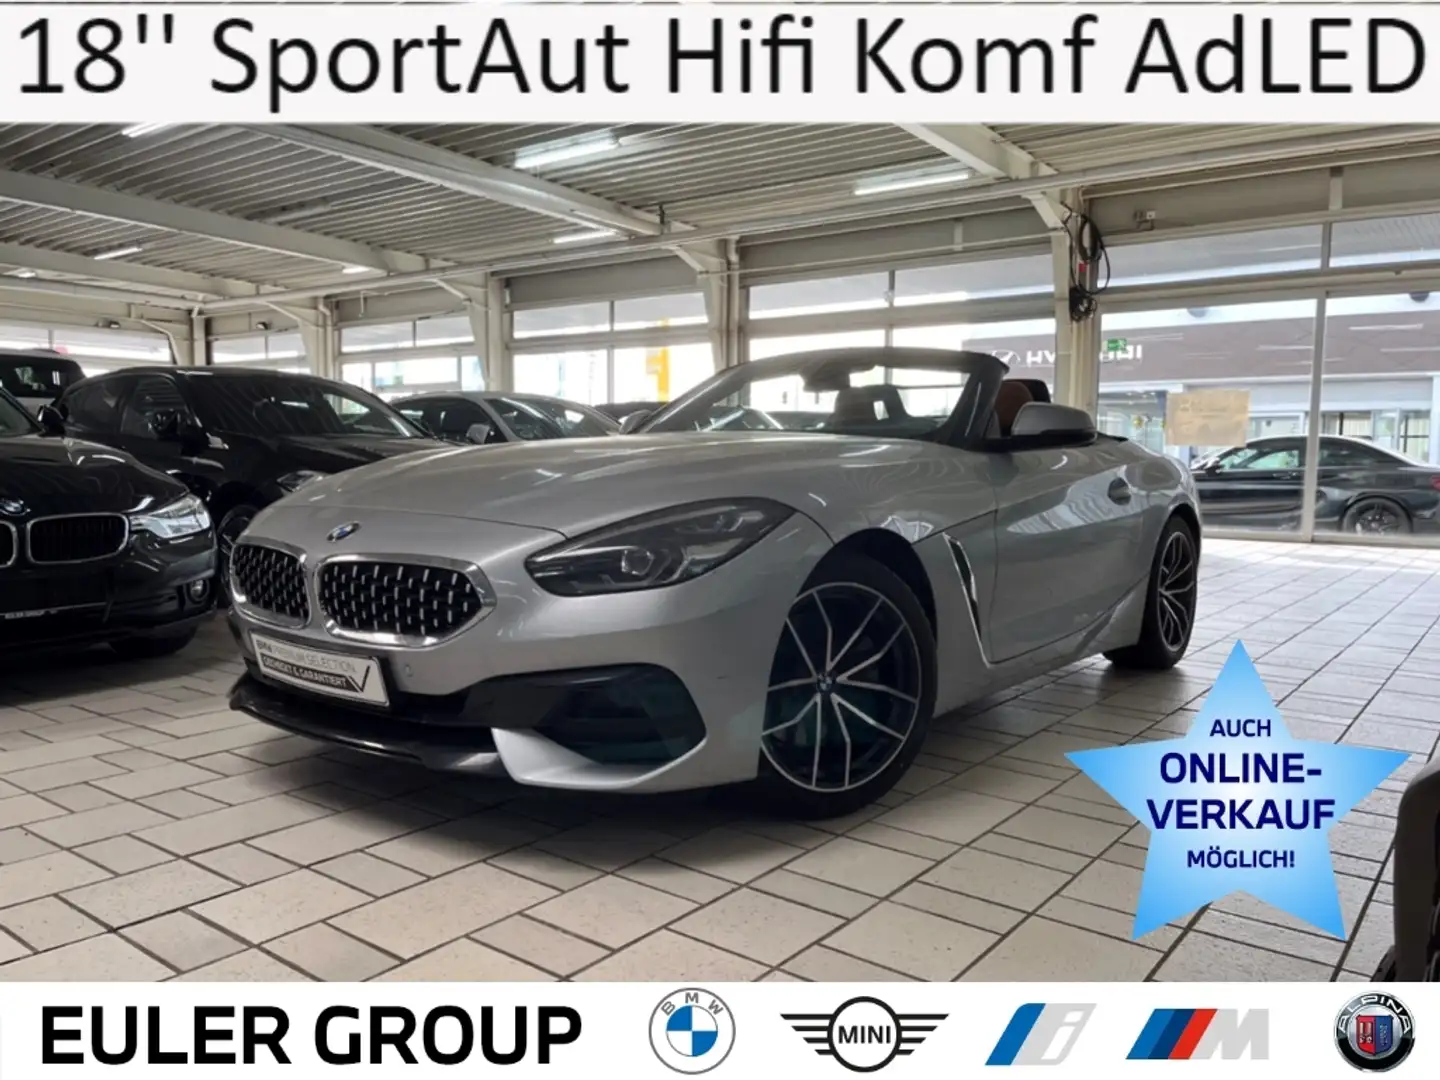 BMW Z4 20i Sport Line 18'' SportAut Hifi Leder Komf AdLED Stříbrná - 1